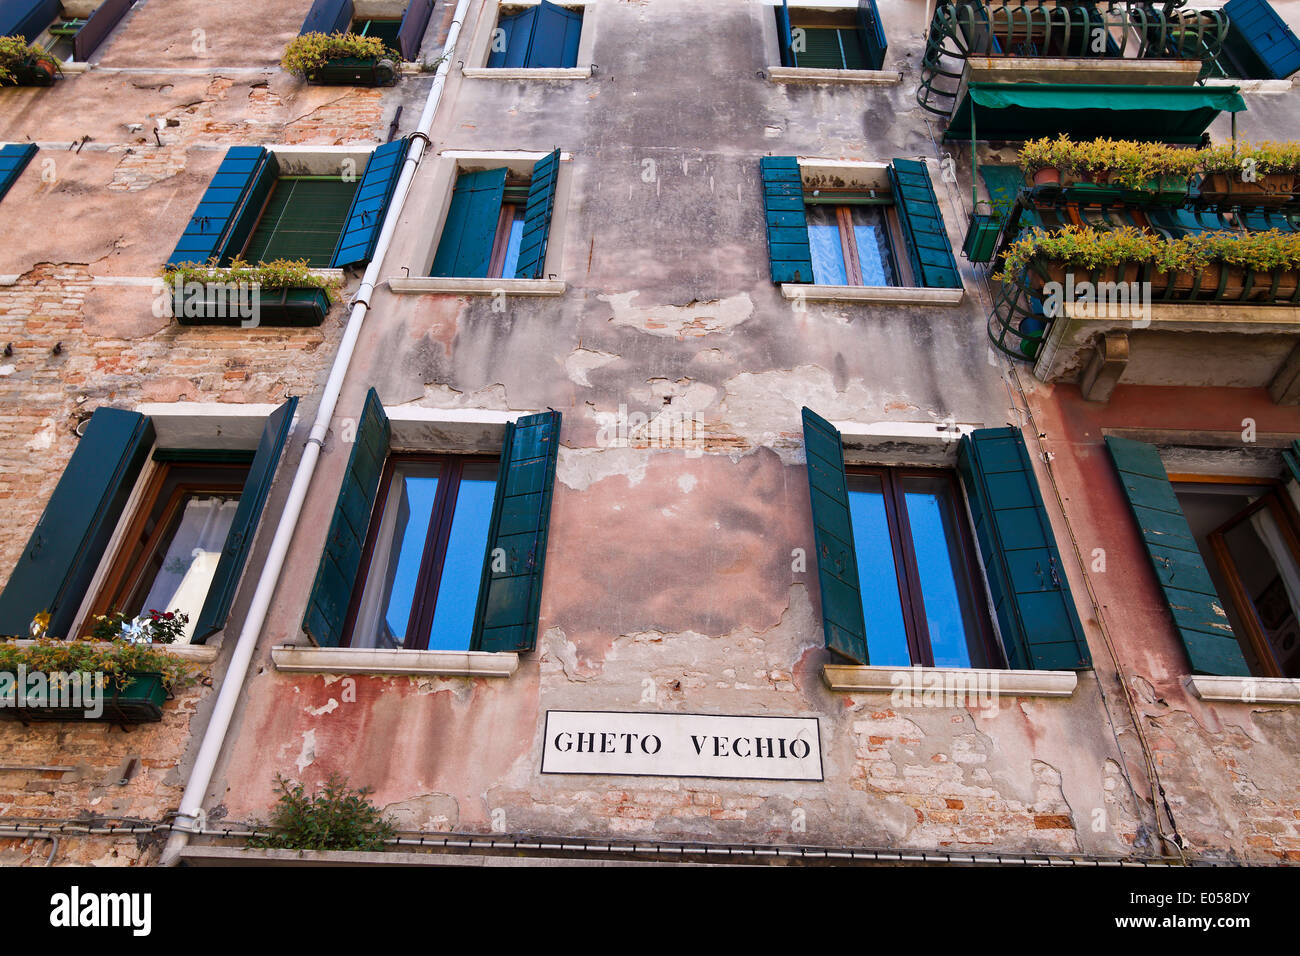 Vale la pena visitar la ciudad de Venecia en Italia. Trimestre del ghetto judío, die Stadt sehenswerte Venedig en Italien. Ghetto Judenviertel Foto de stock